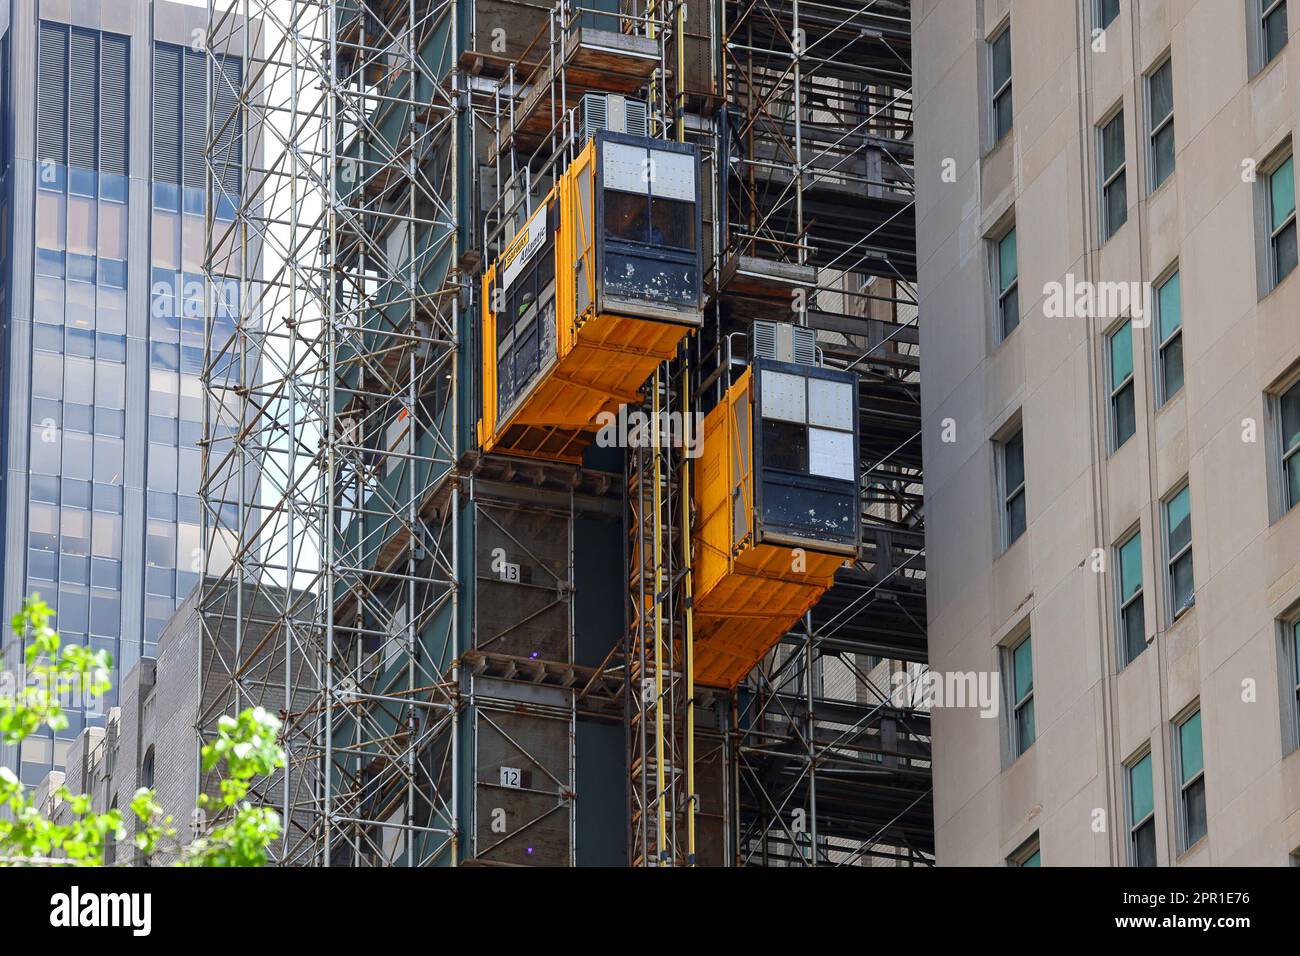 Eine Raxtar-Hebebühne zum Bewegen von Personen und Material auf einer Baustelle in New York City. Die Elevatoren verwenden einen Zahnstangenantrieb. Stockfoto